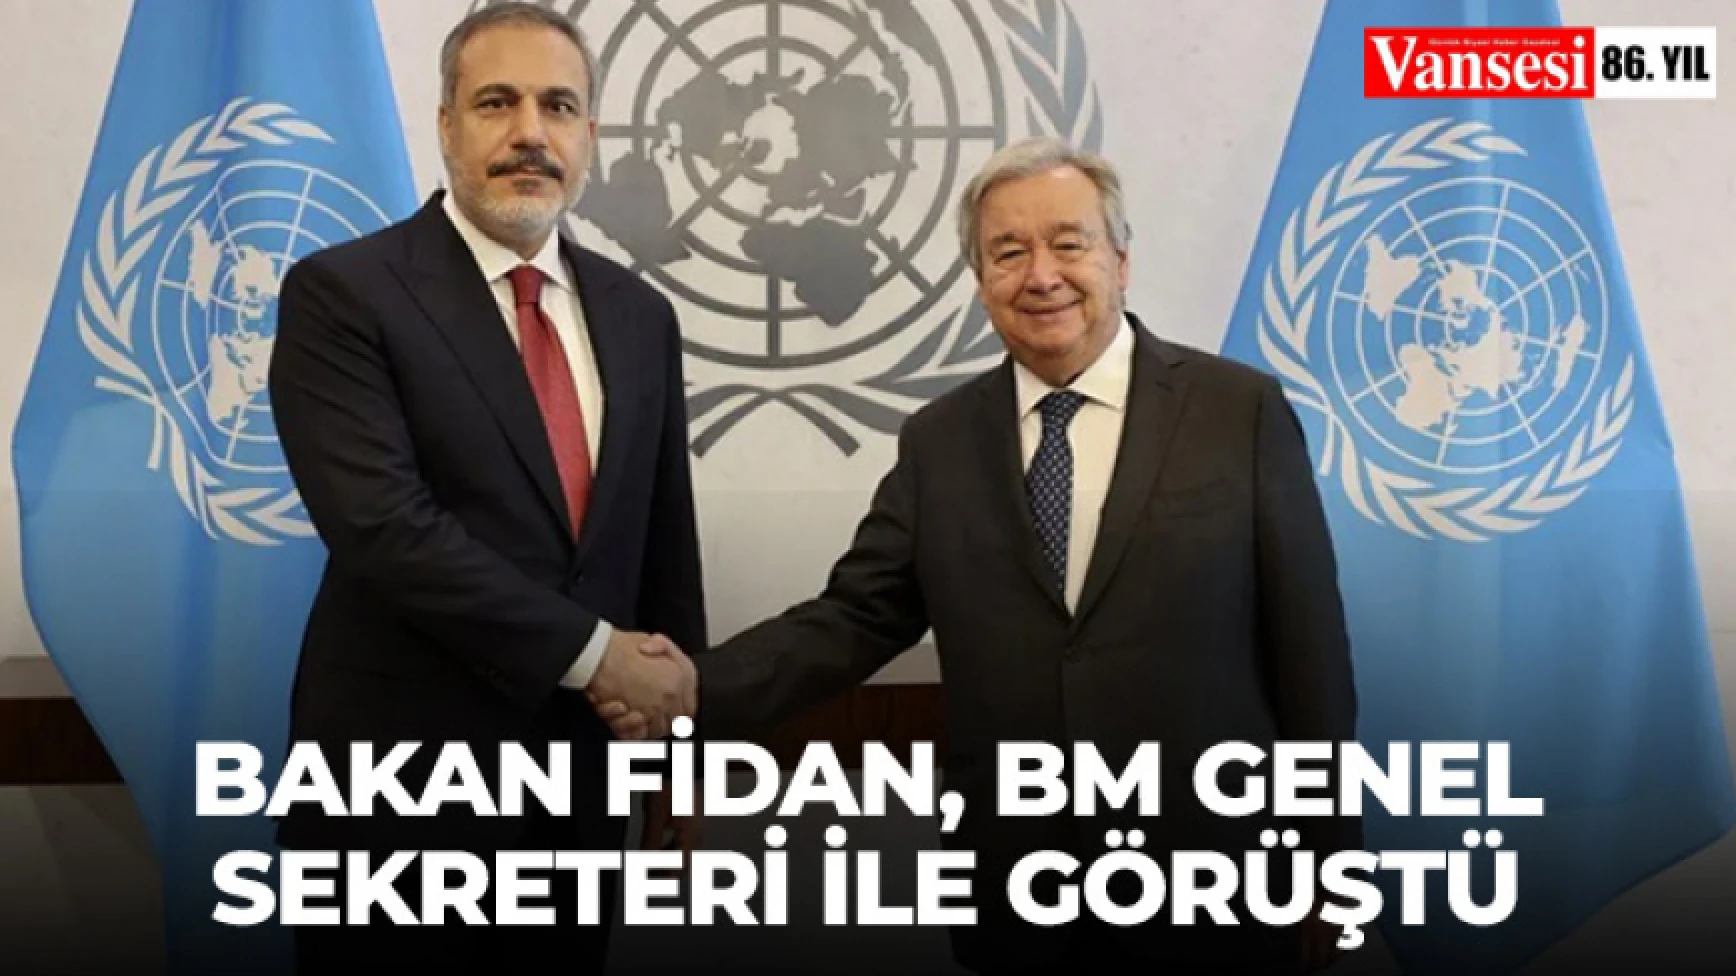 Bakan Fidan, BM Genel Sekreteri ile görüştü